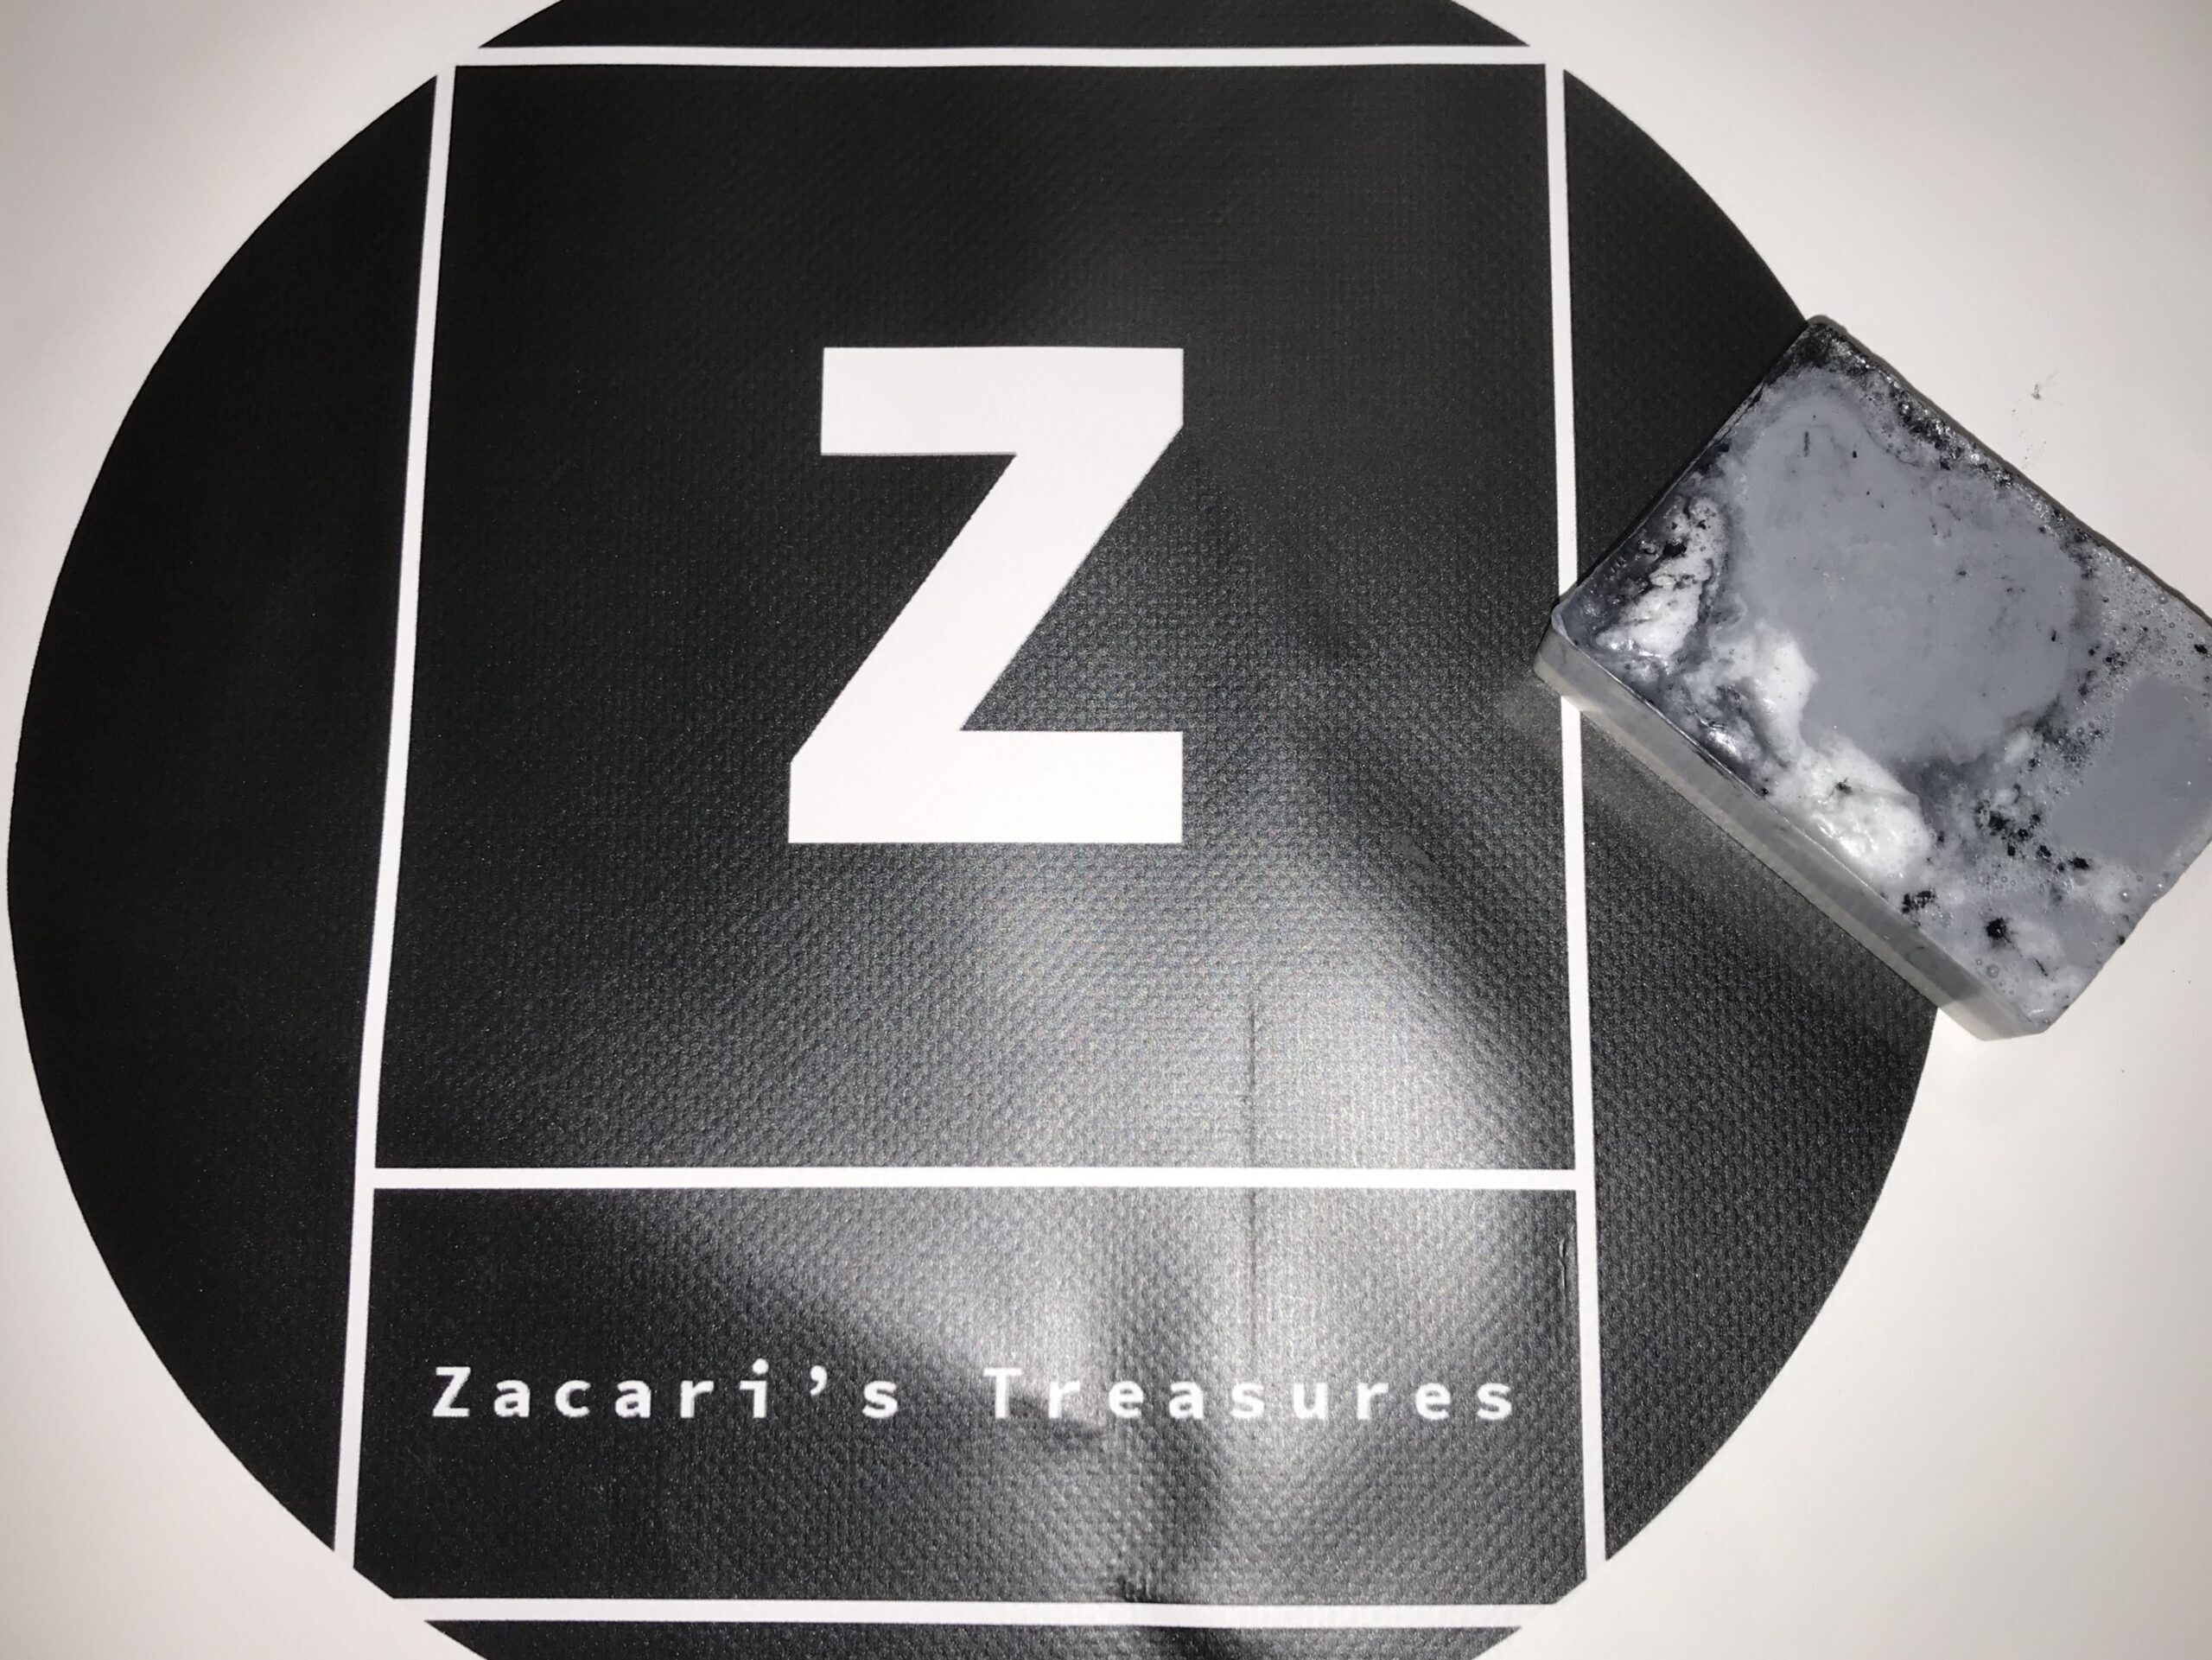 Zacari’s Treasures